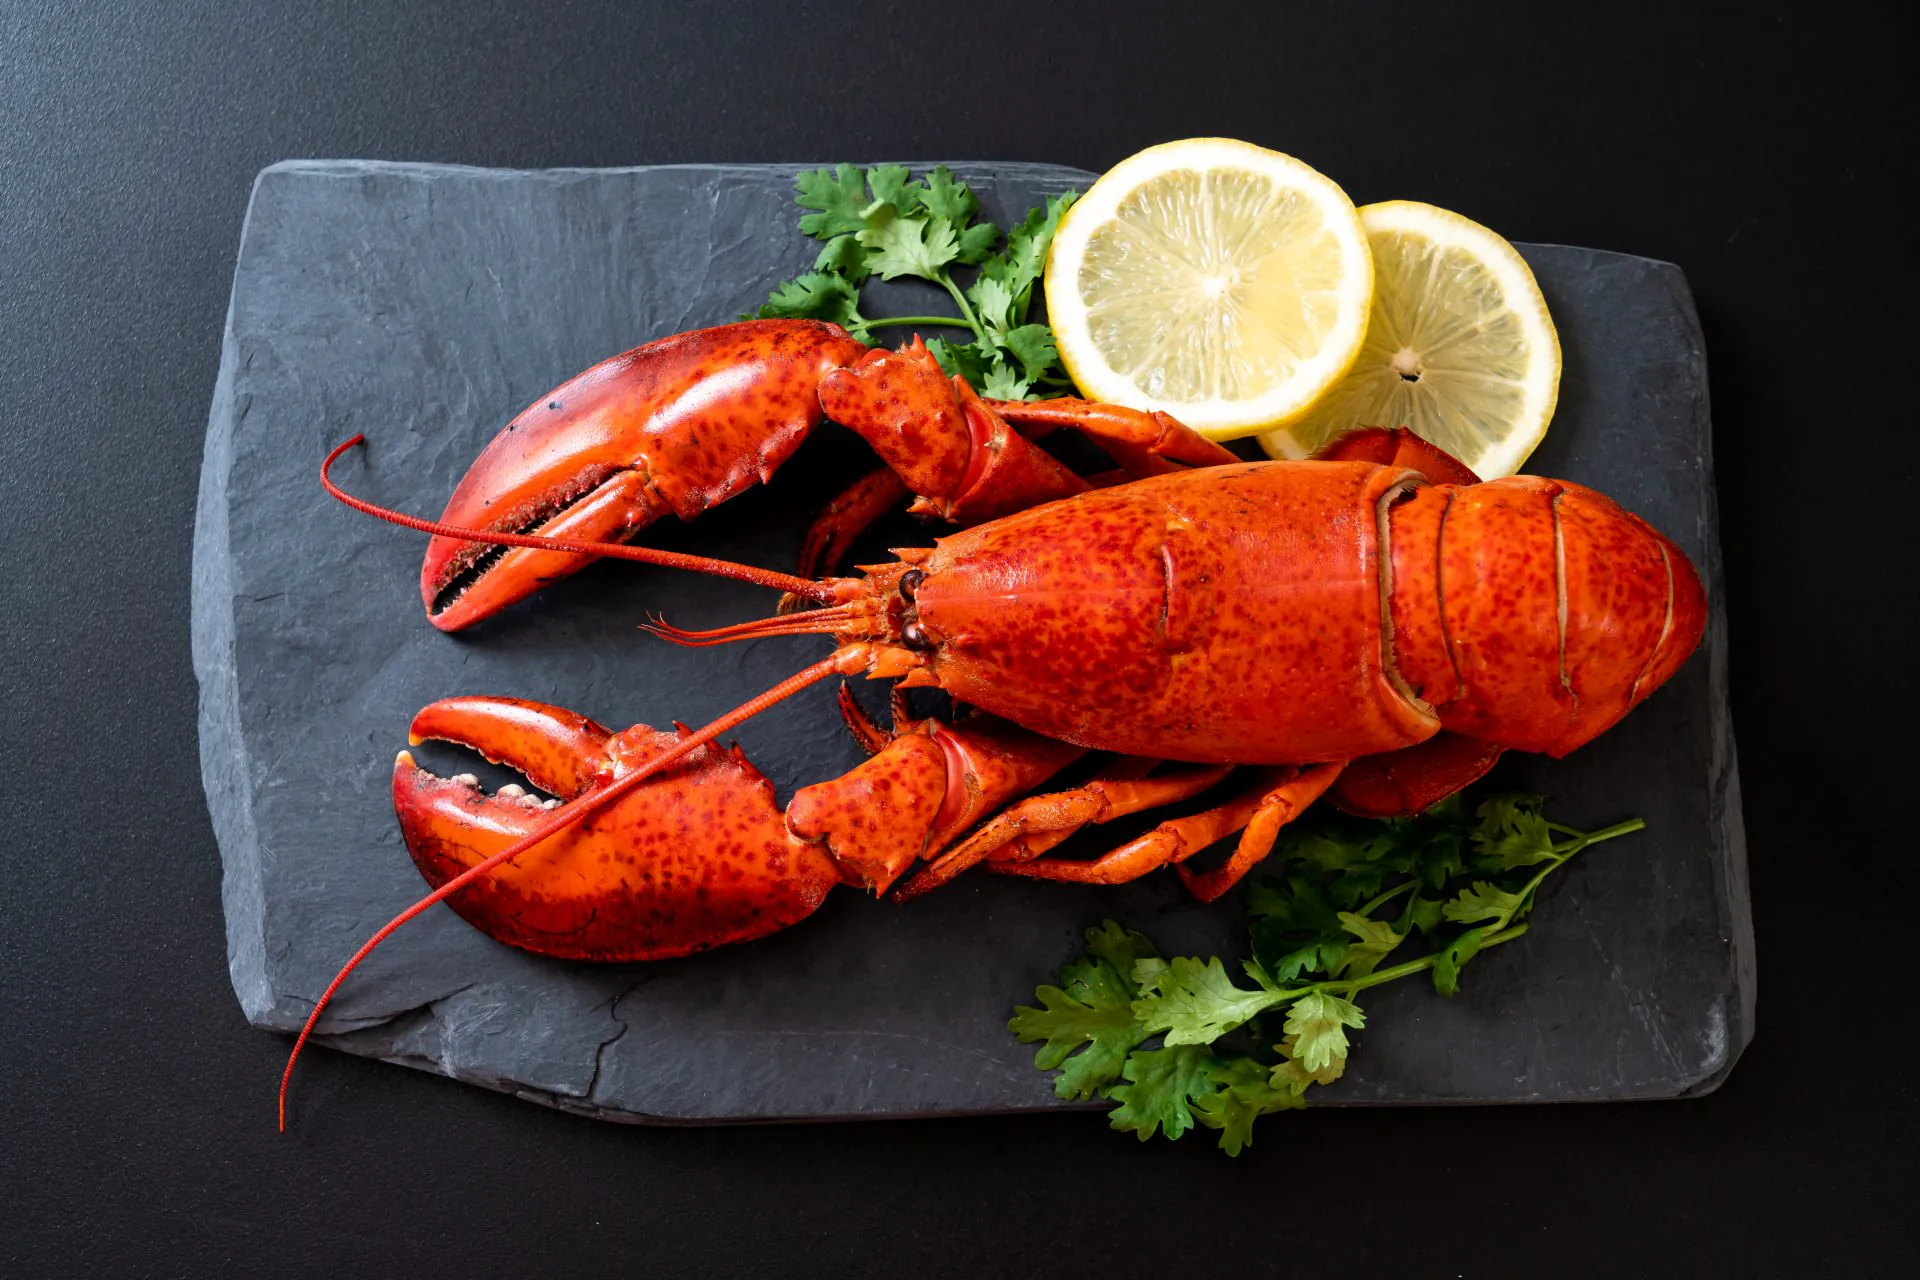 Cum se prepara si se consuma homarul?